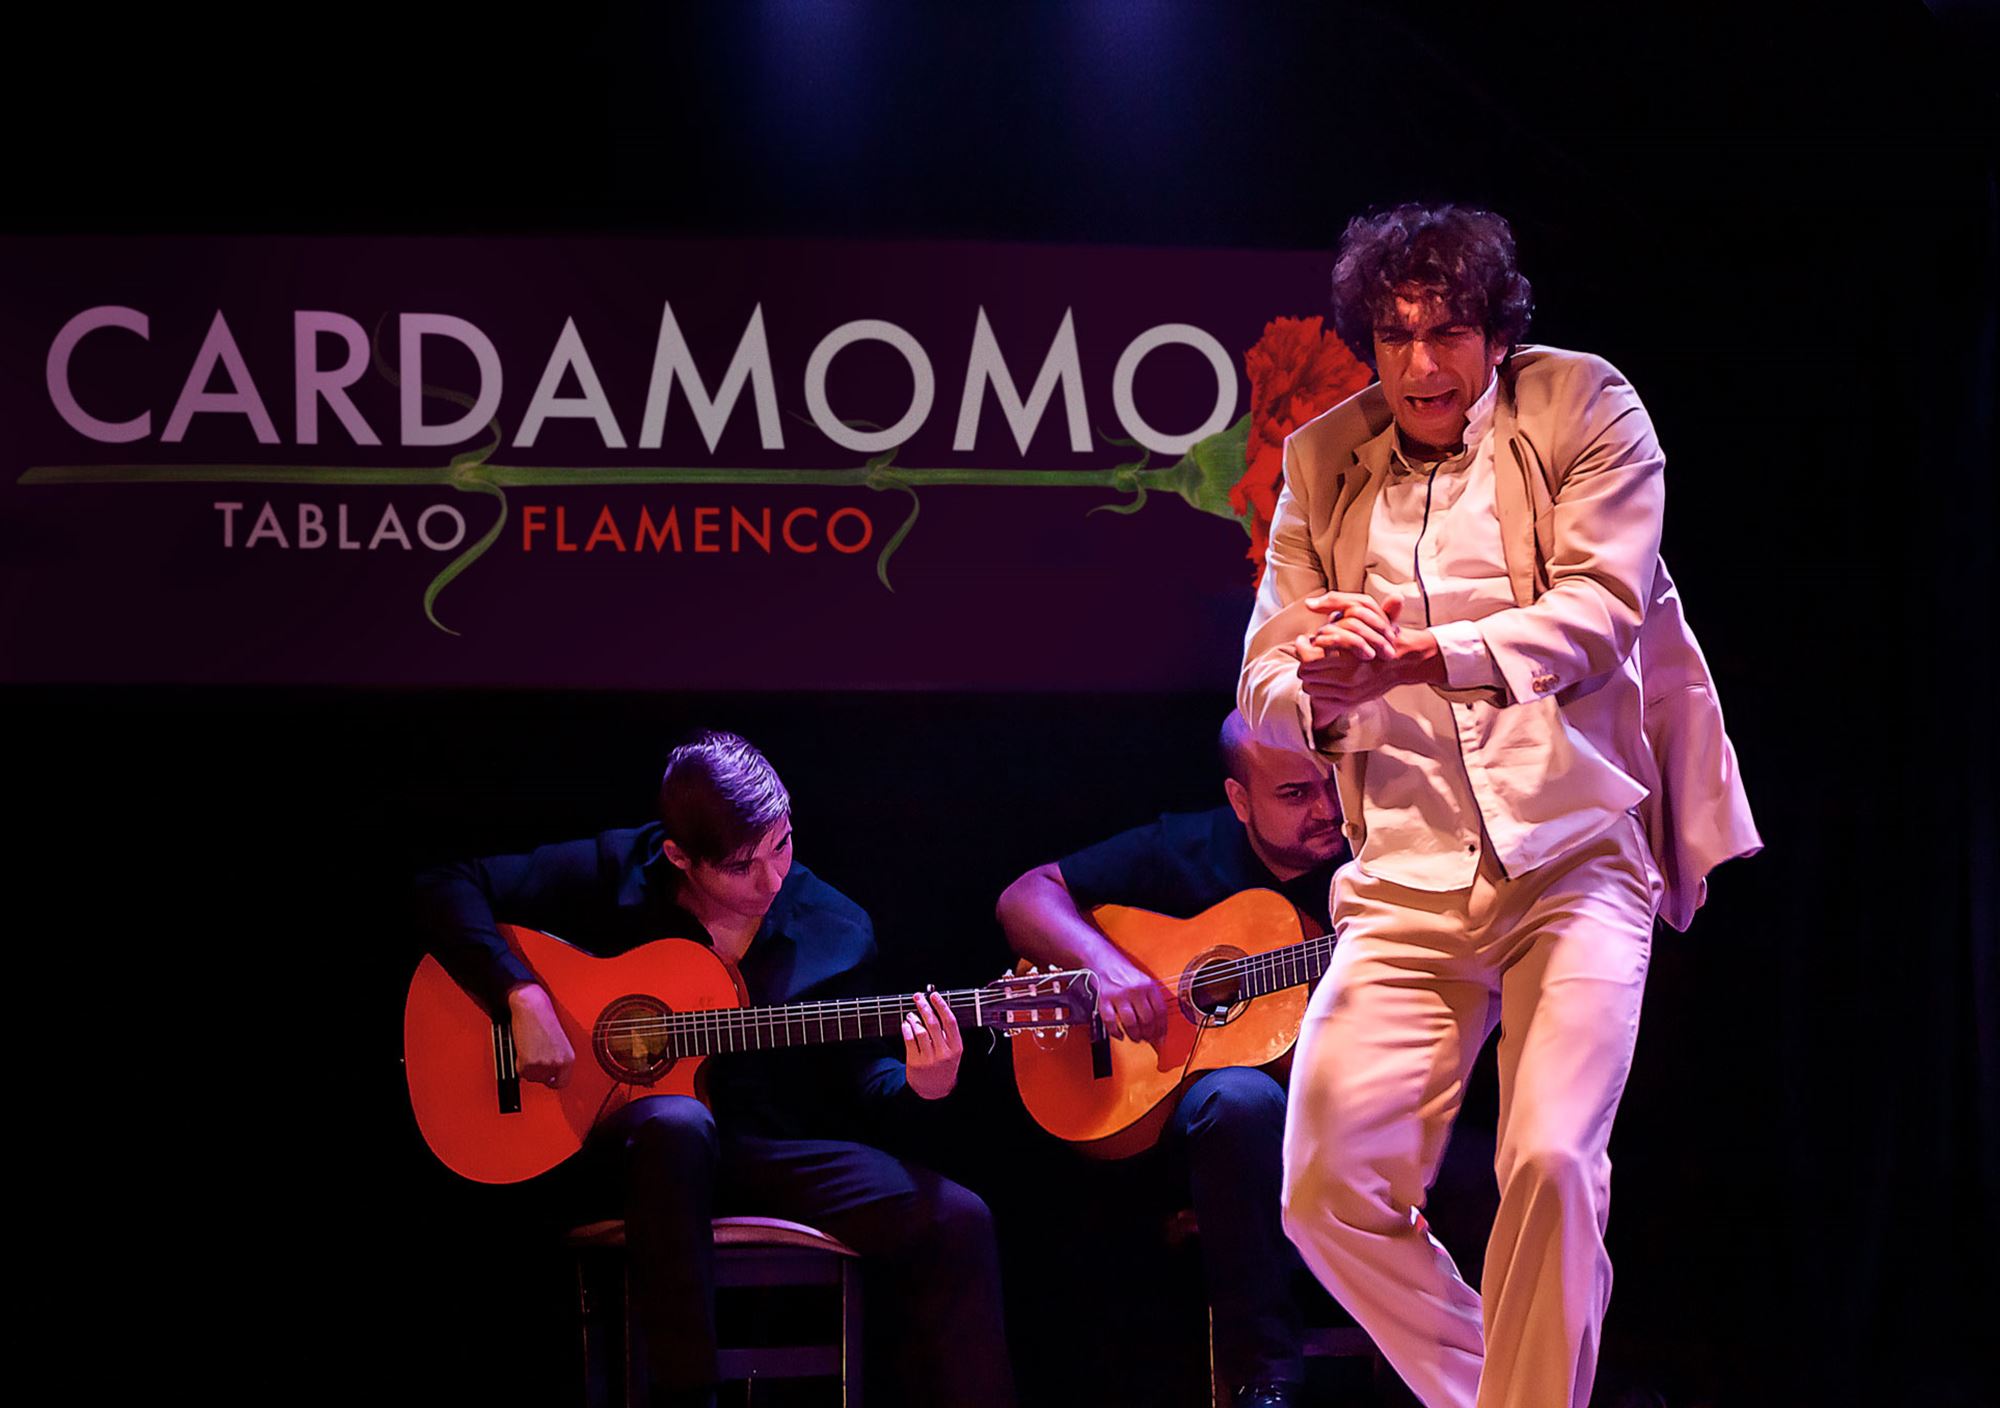 réservations tours Spectacle du flamenco à Cardamomo Tablao billets visiter madrid